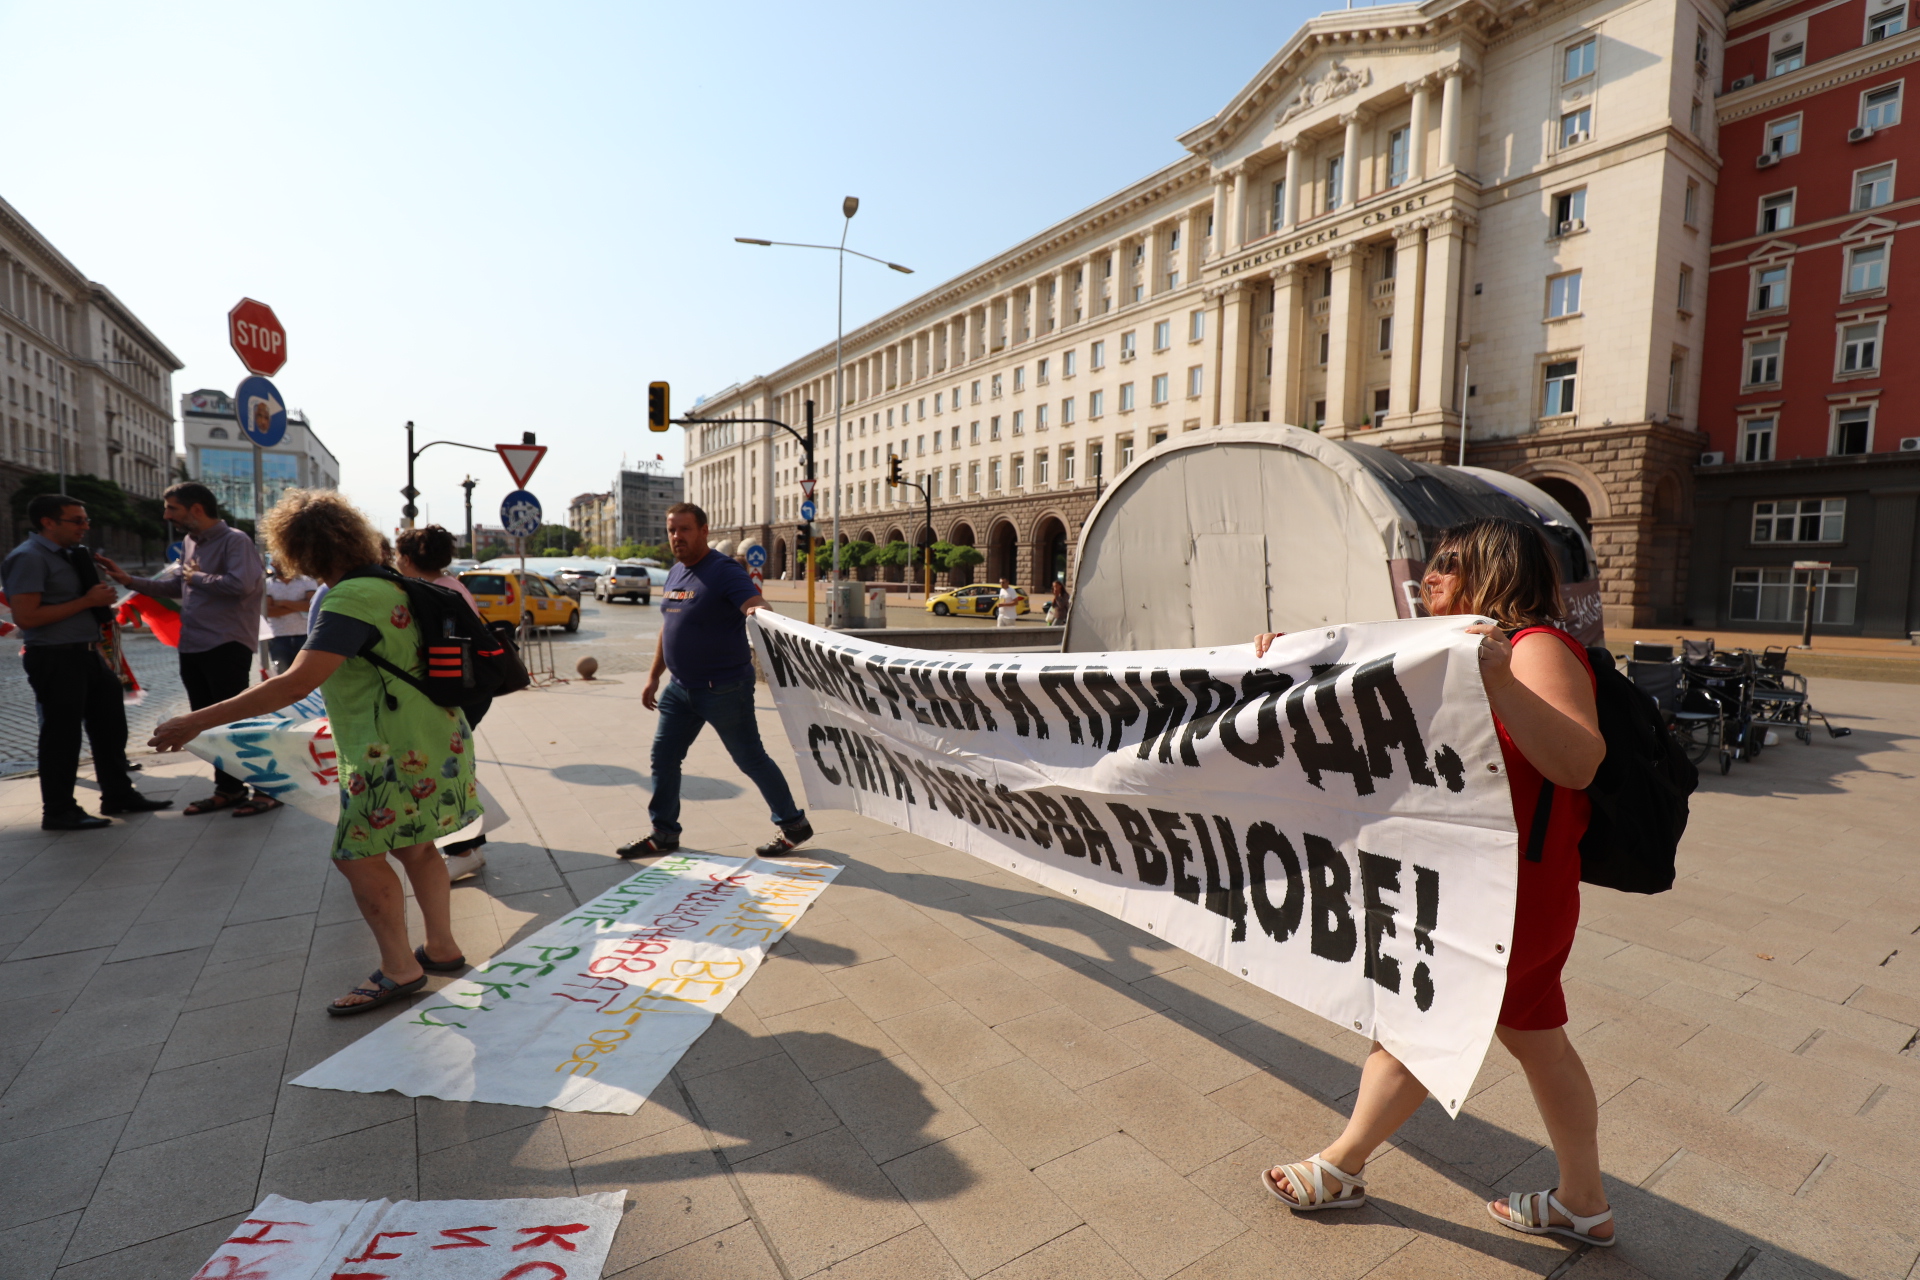 Протести на ловно-рибарски дружества и природозащитници се проведоха в няколко града на България тази вечер. Причината са предложения за промени, които според недоволните, ще позволят строеж на ВЕЦ-ове и унищожаване на околната среда.